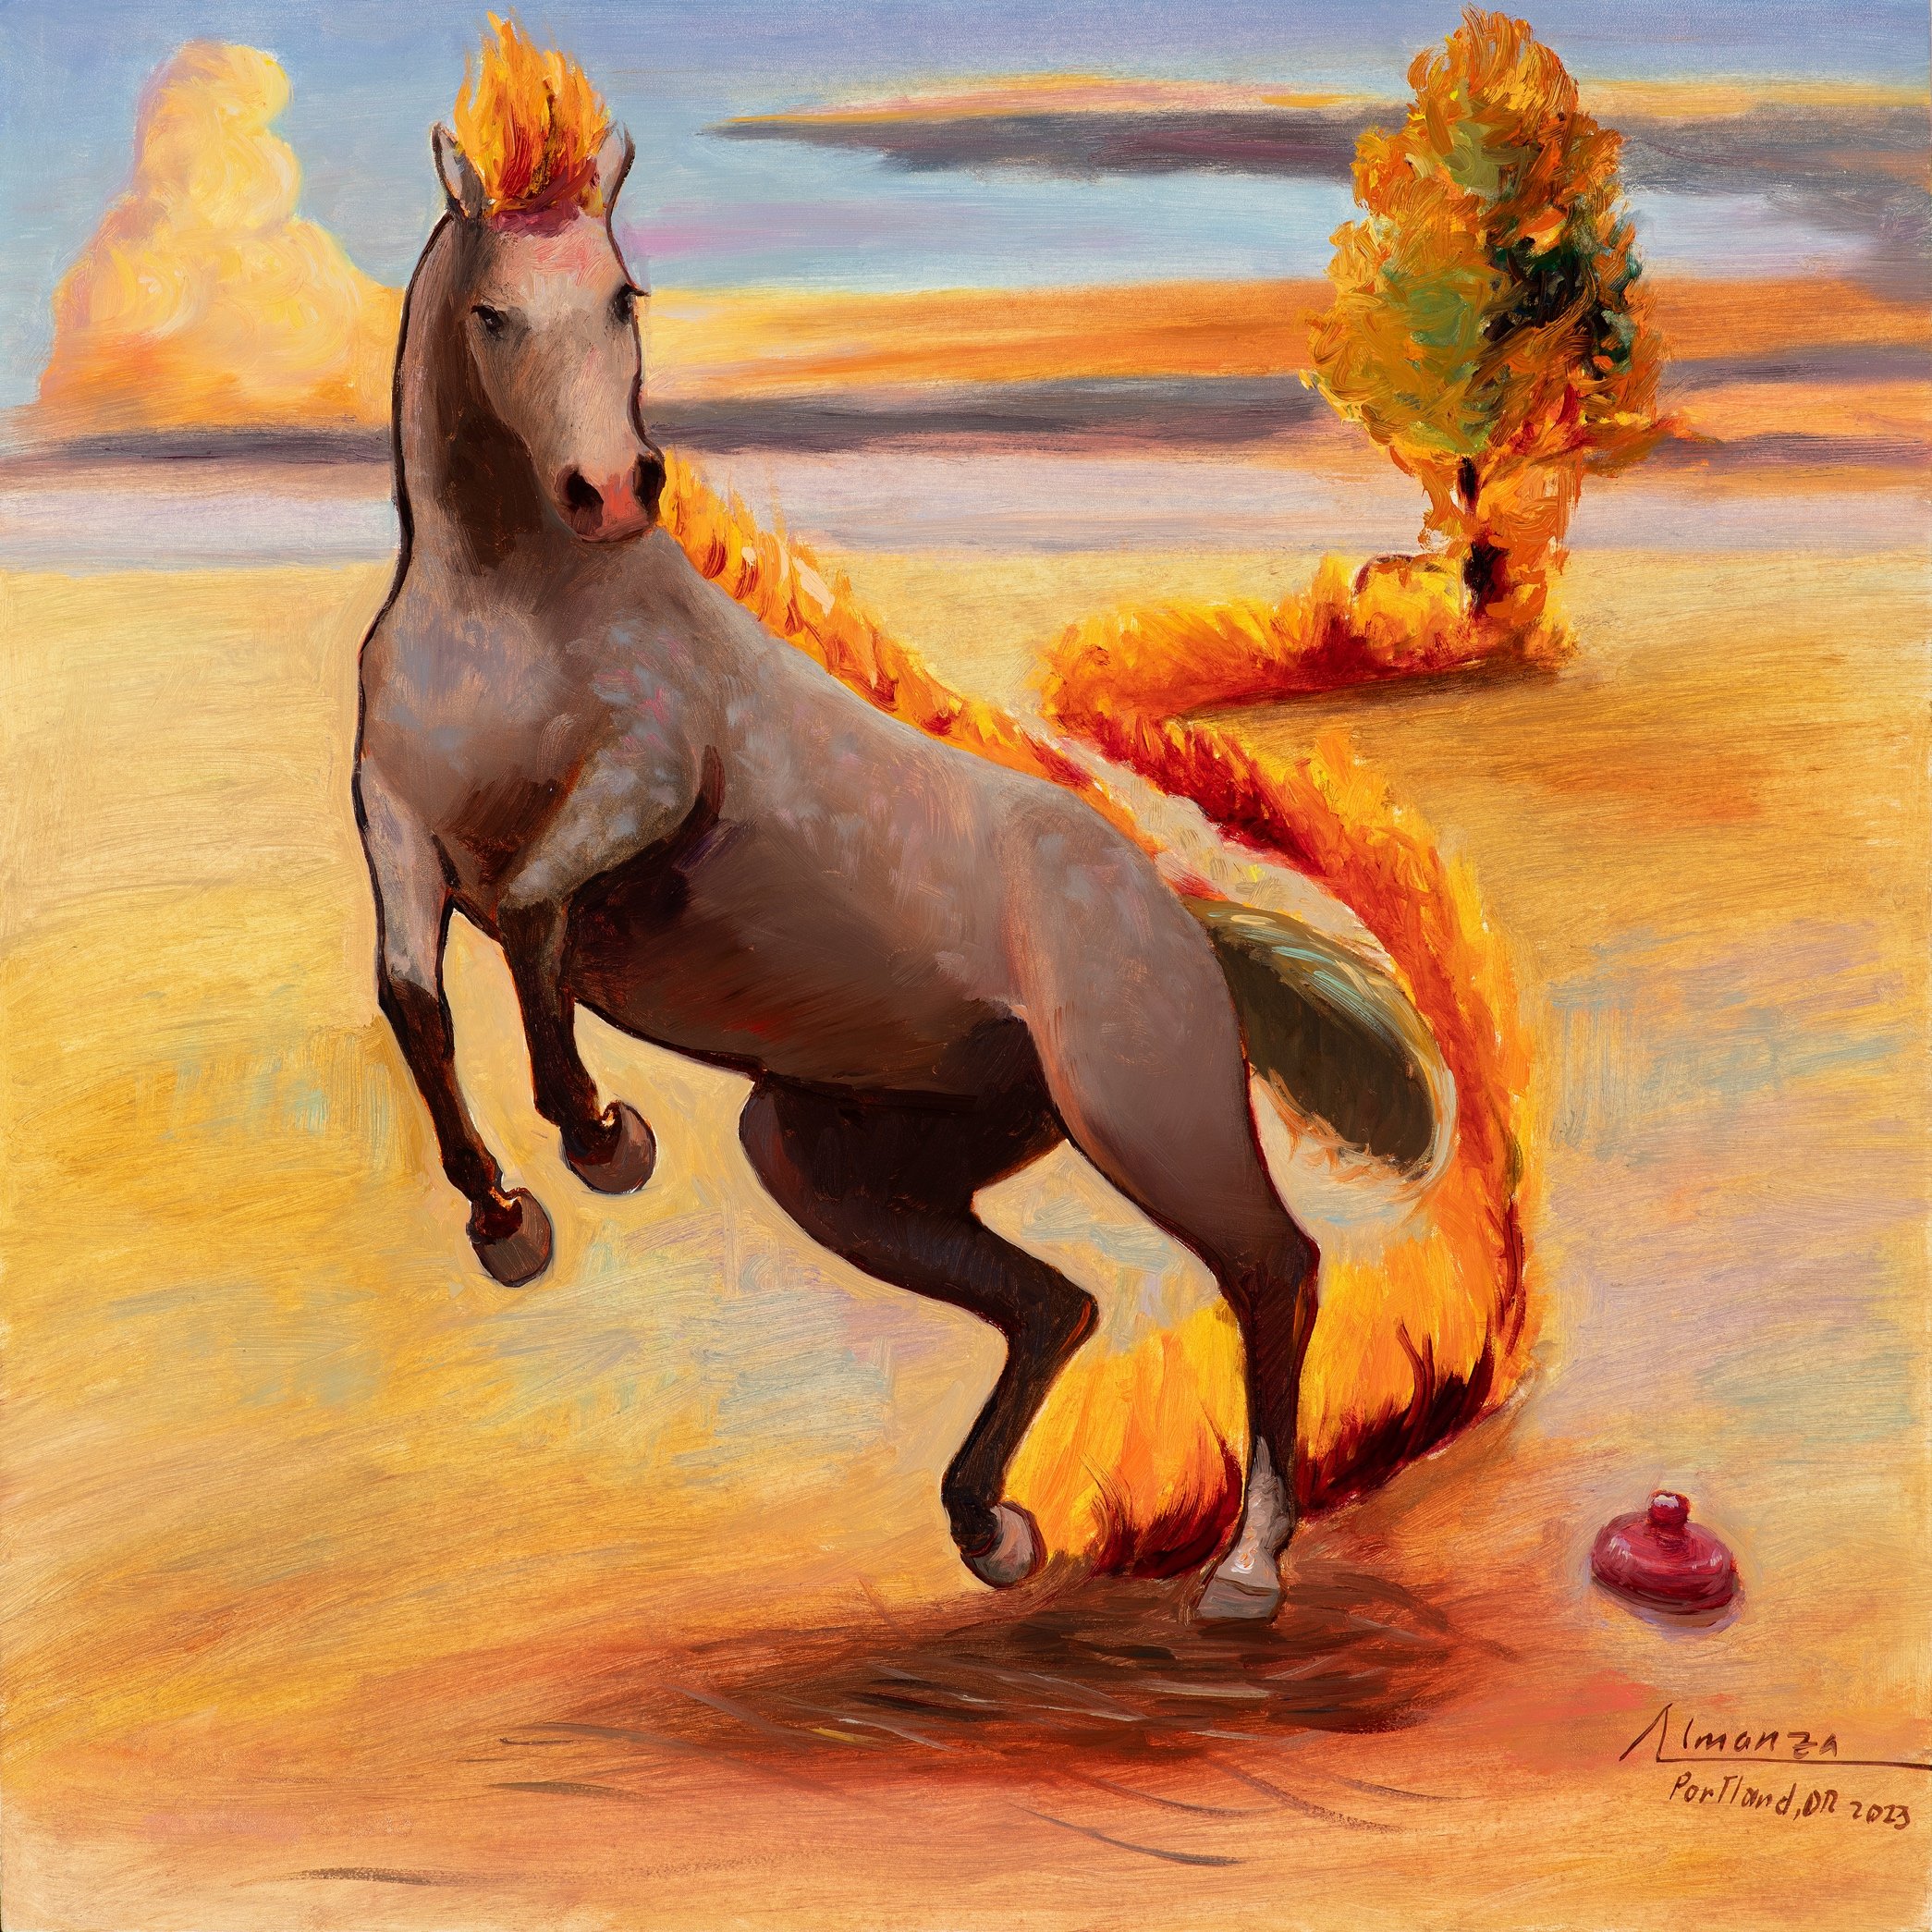 Fire Horse and la Botija Enterrada